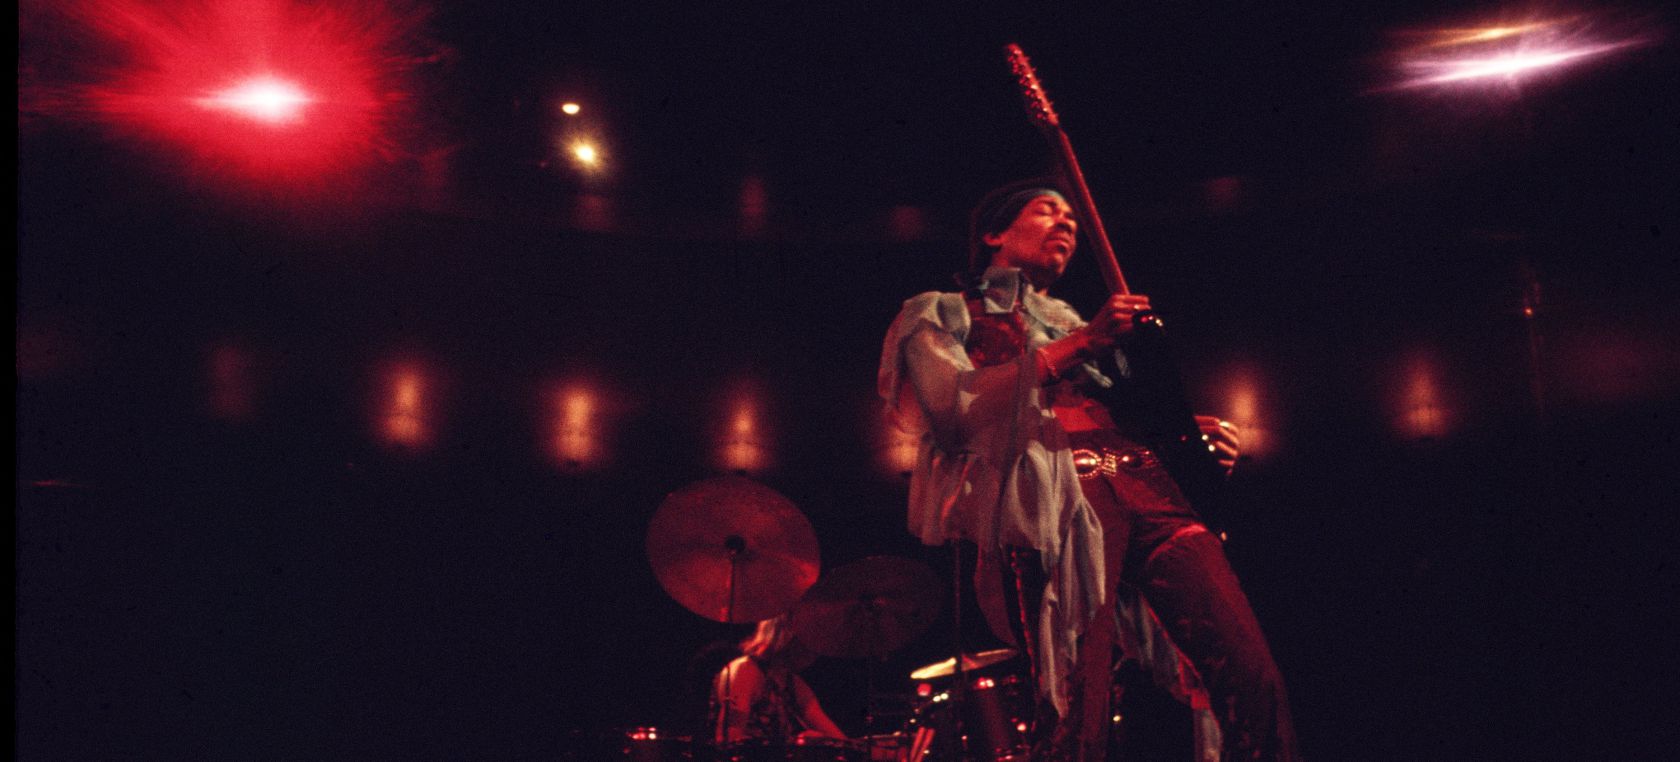 Las cuatro teorías que tratan de explicar la muerte de Jimi Hendrix, la leyenda de la guitarra